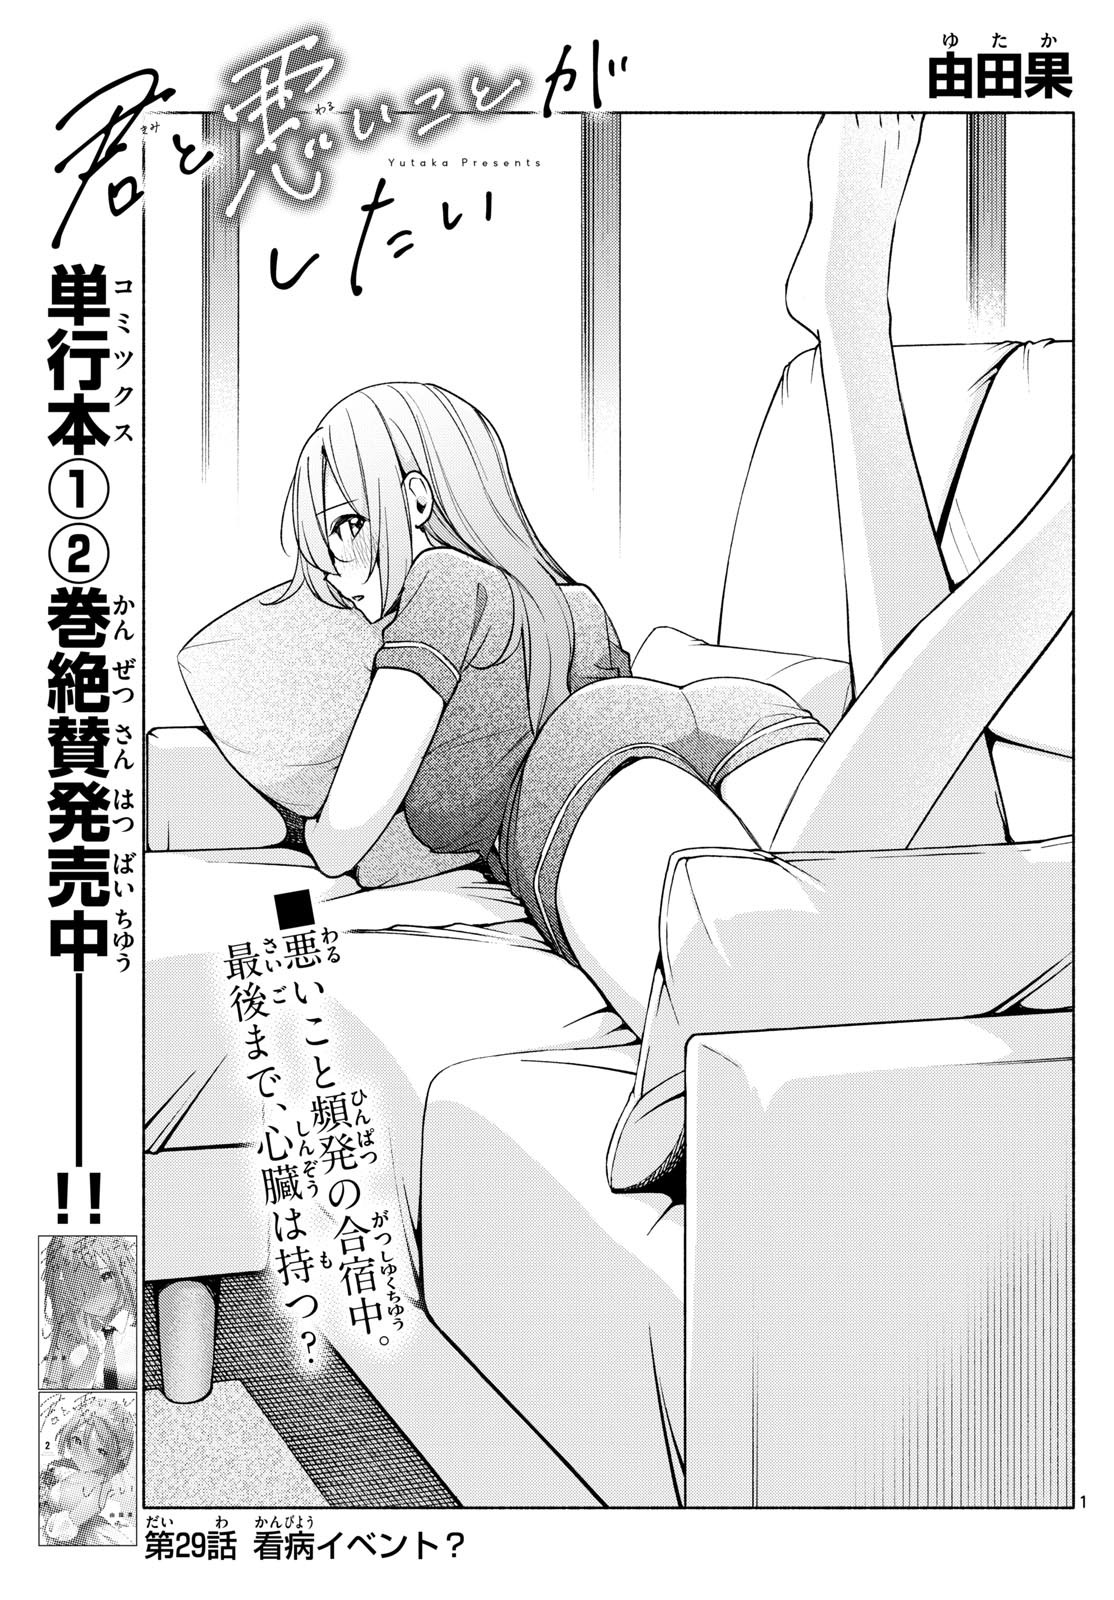 Kimi to Warui Koto ga Shitai - Chapter 029 - Page 1